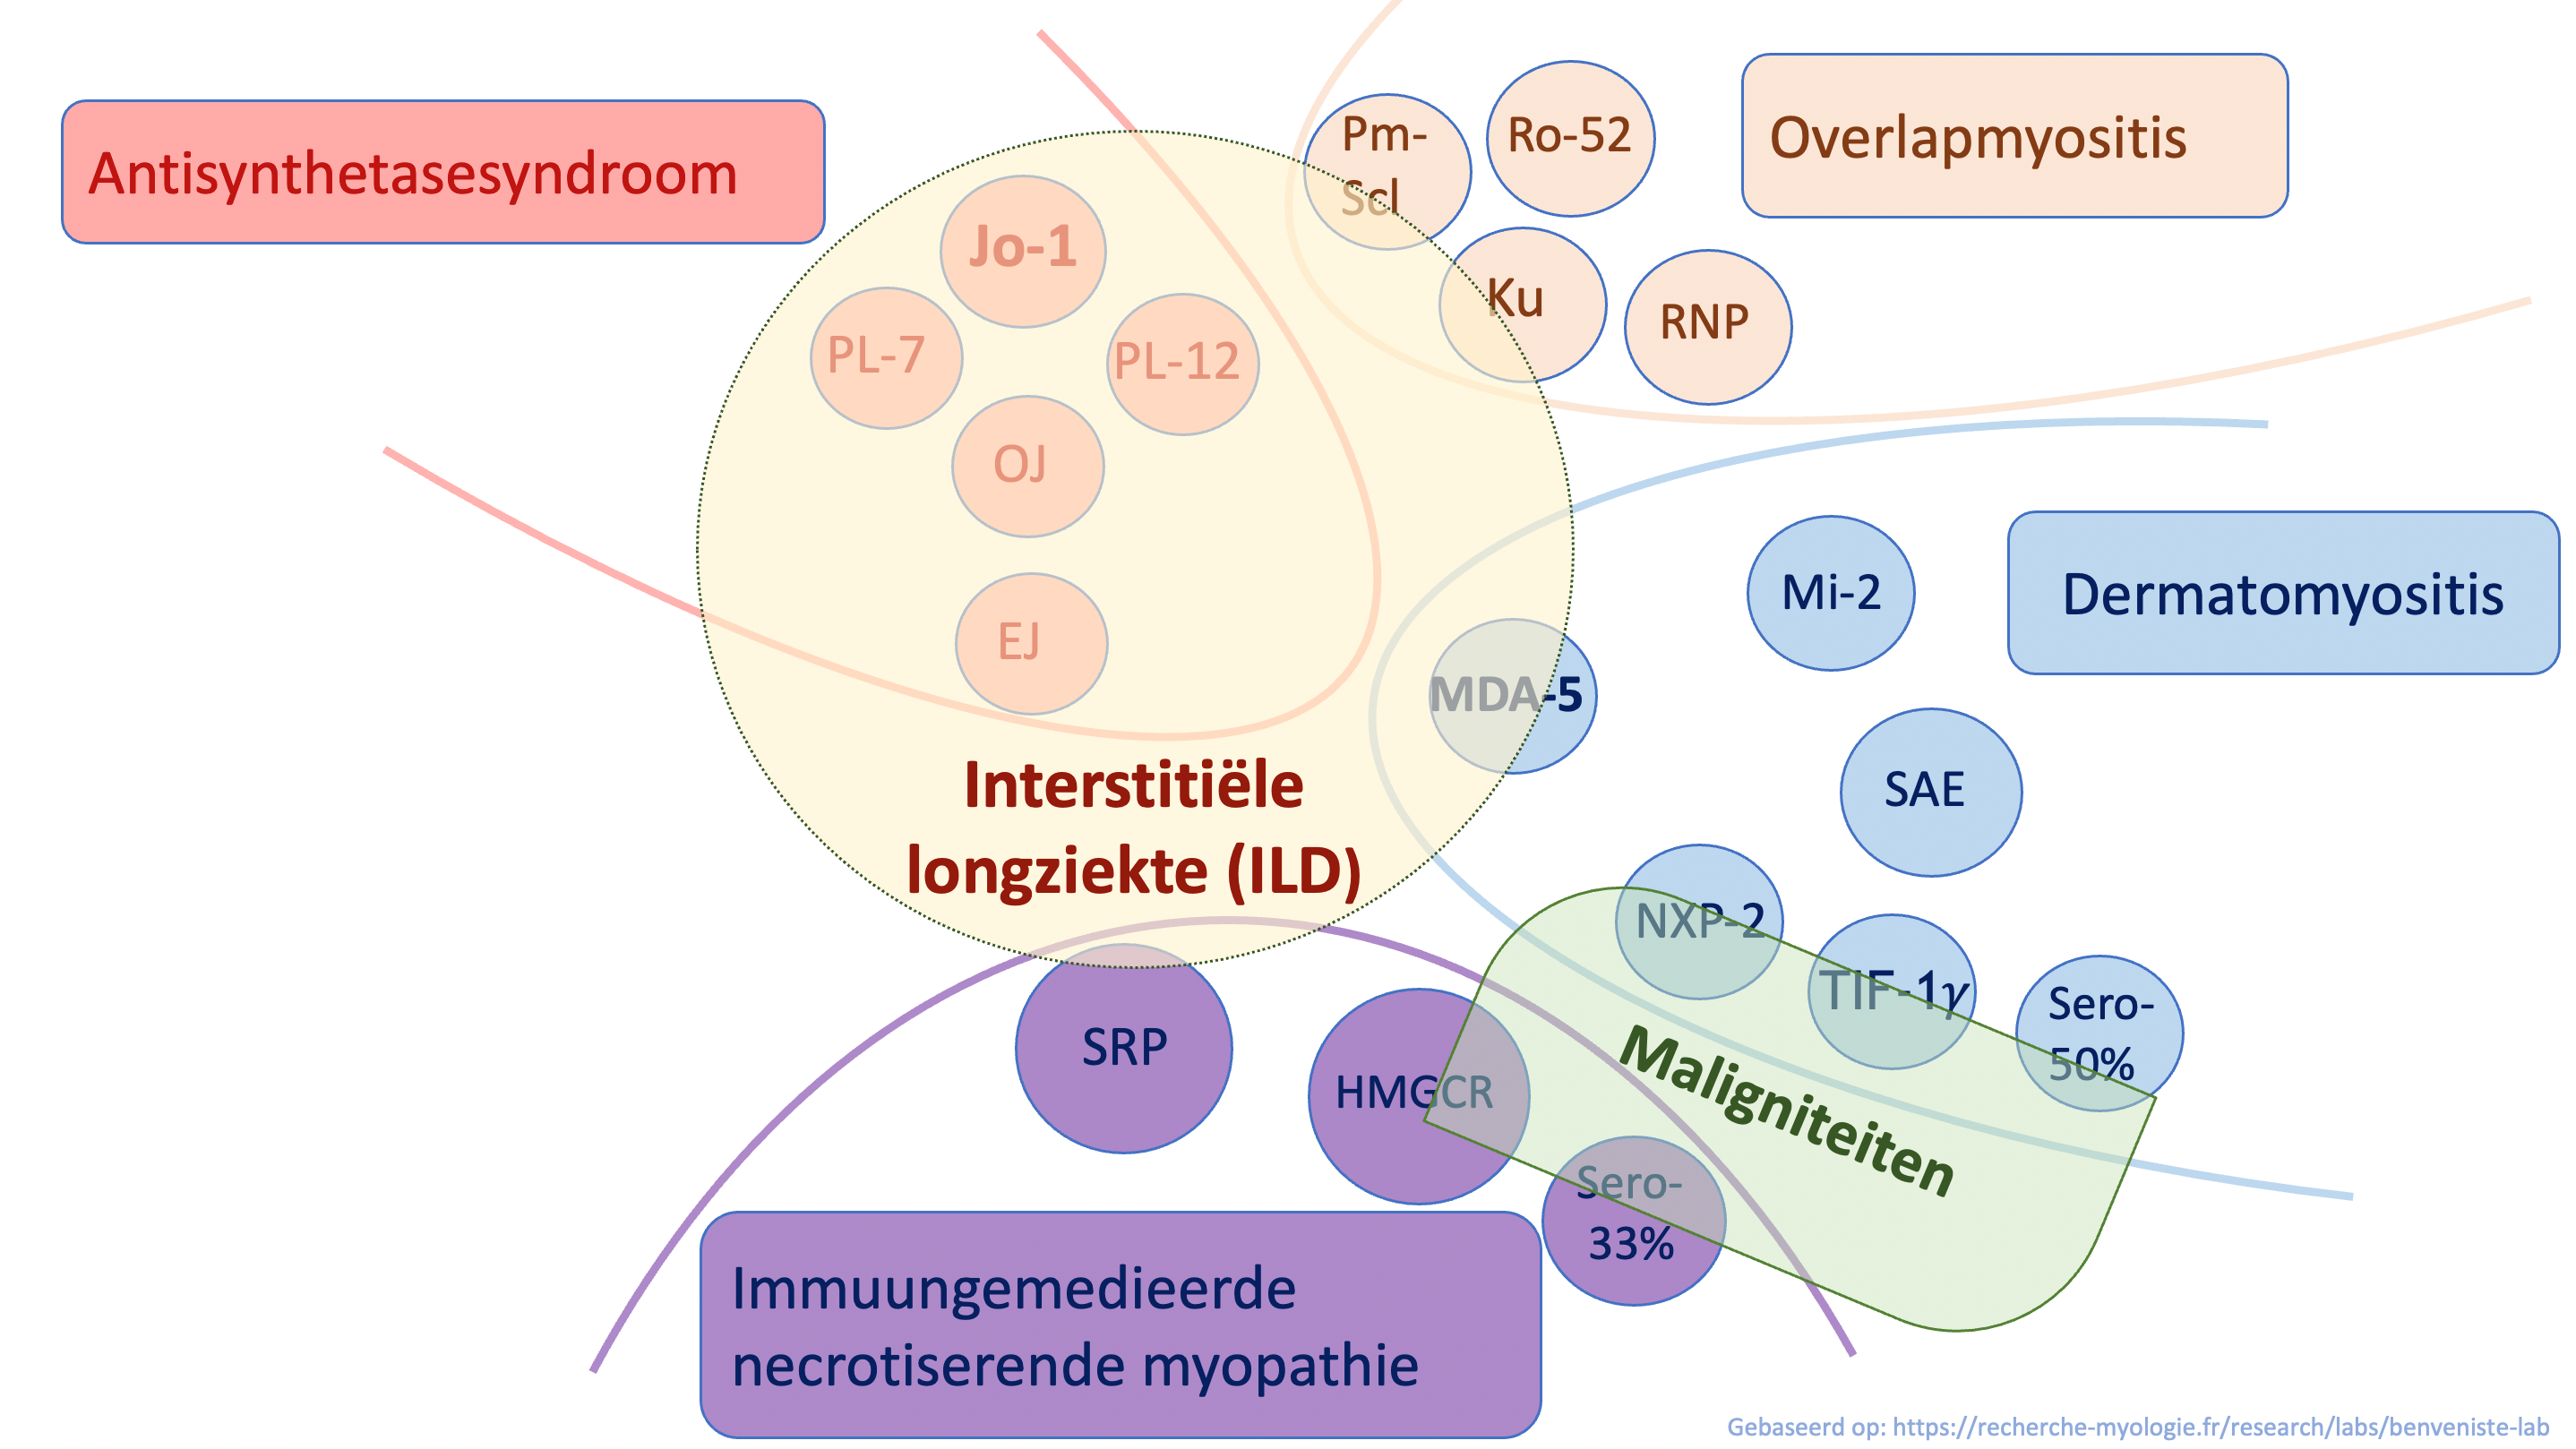 De relatie tussen myositis auto-antistoffen met interstitiële longziekte en maligniteiten. De myositis-specifieke antistoffen zijn rood, paars en blauw afgebeeld; de myositis-geassocieerde antistoffen beige.